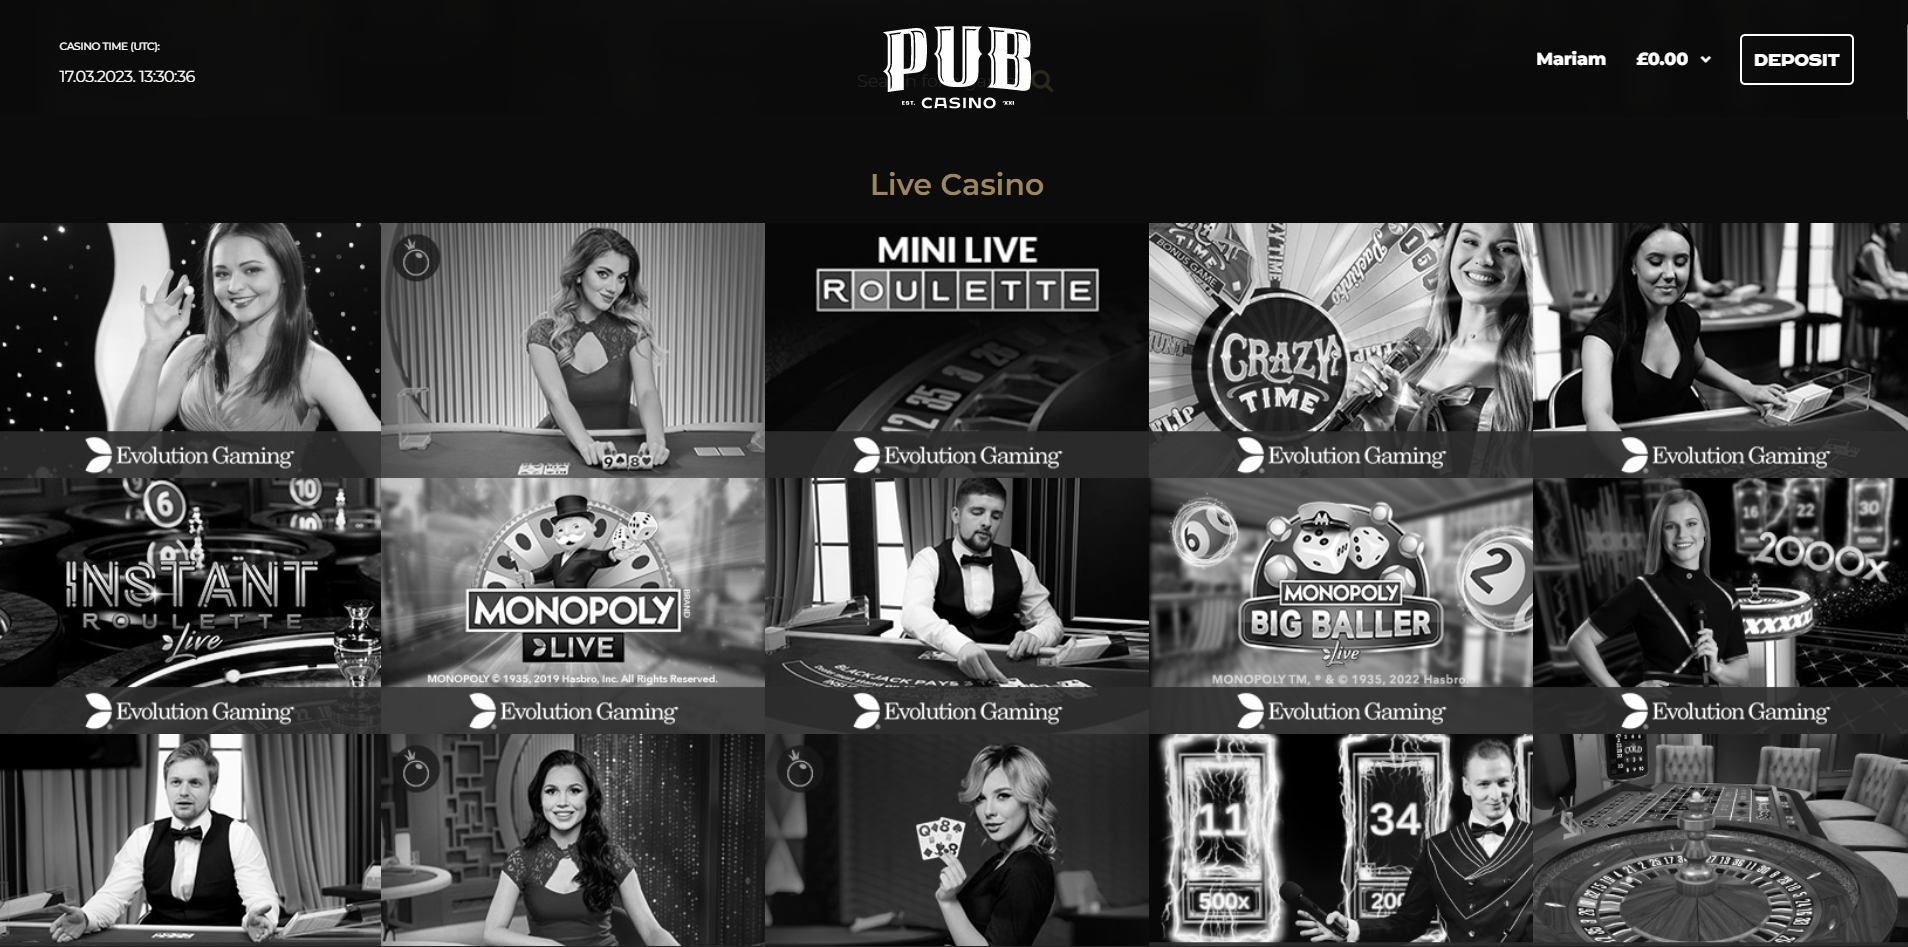 PubCasino live casino page